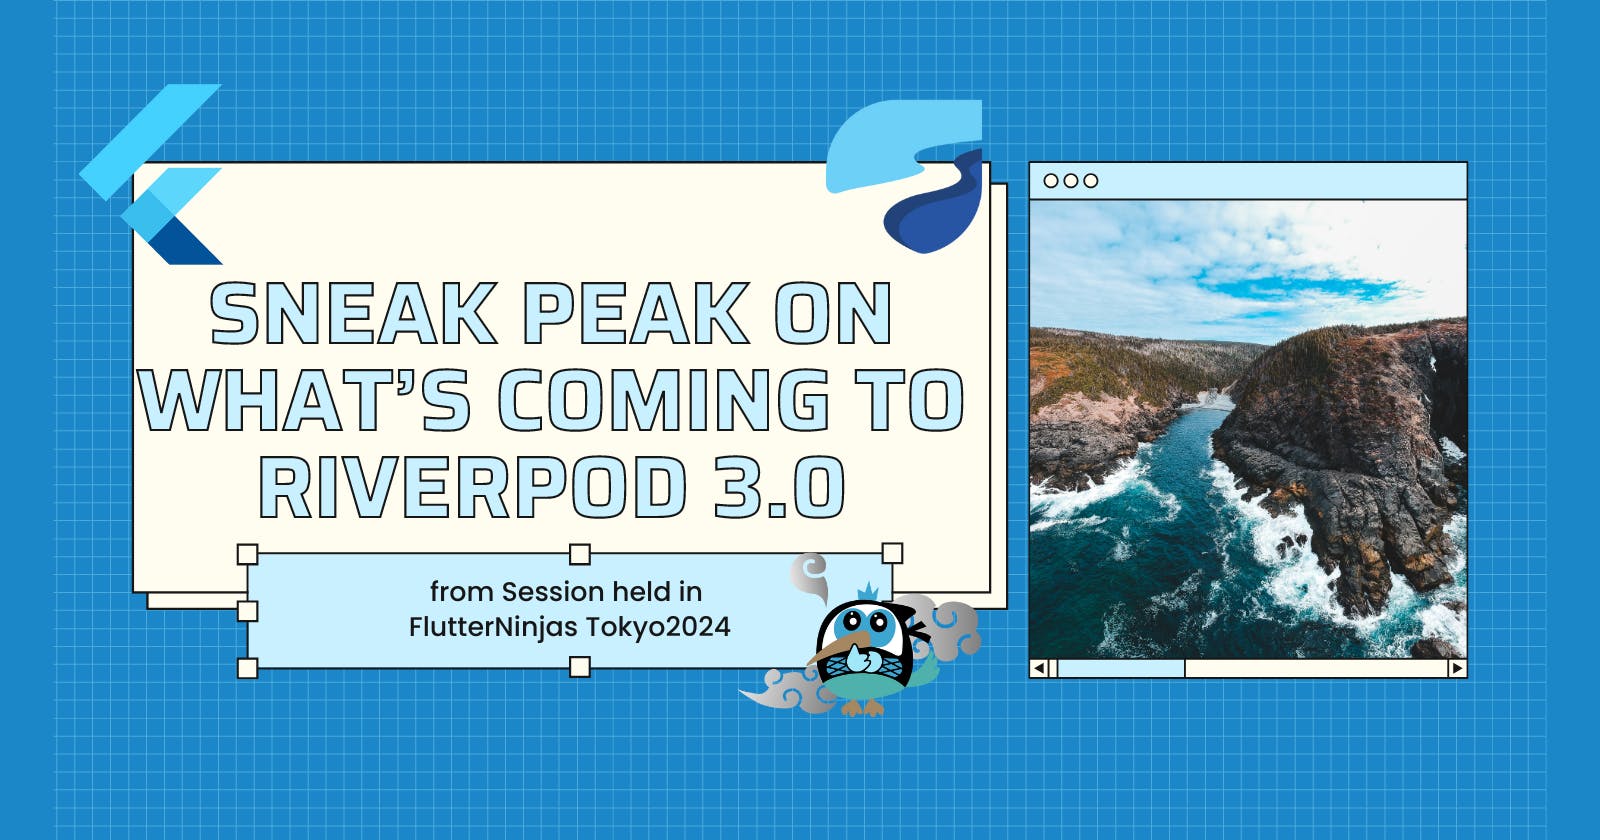 Sneak peak on what's coming to Riverpod 3.0 (@FlutterNinjas Tokyo 2024)